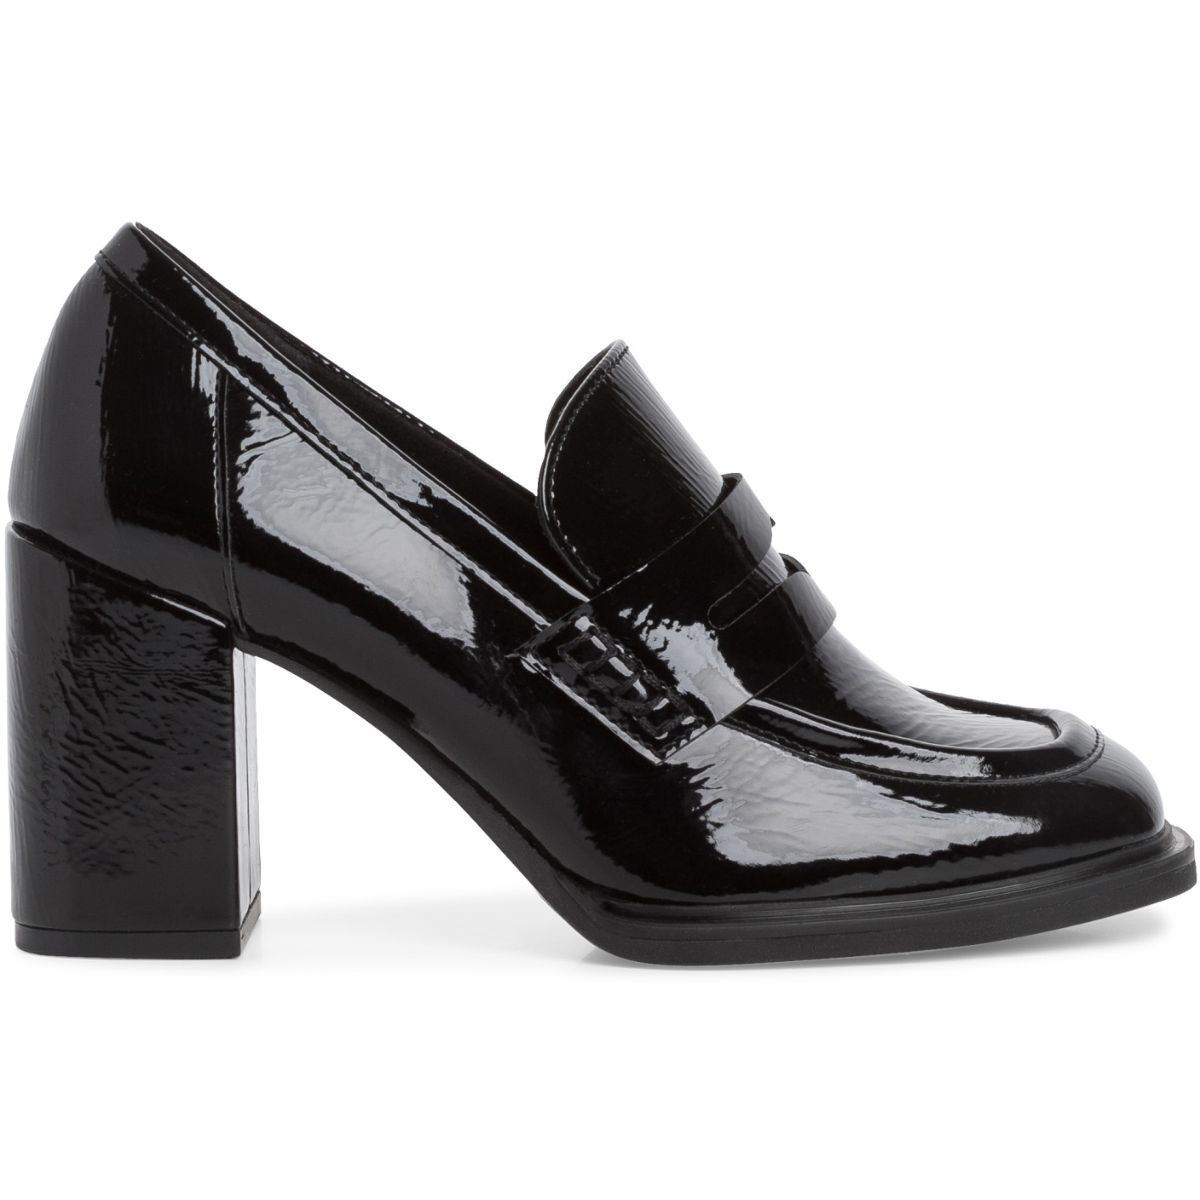 Chaussures Escarpins Escarpins à plateforme Annachiara Escarpin \u00e0 plateforme noir-dor\u00e9 style extravagant 